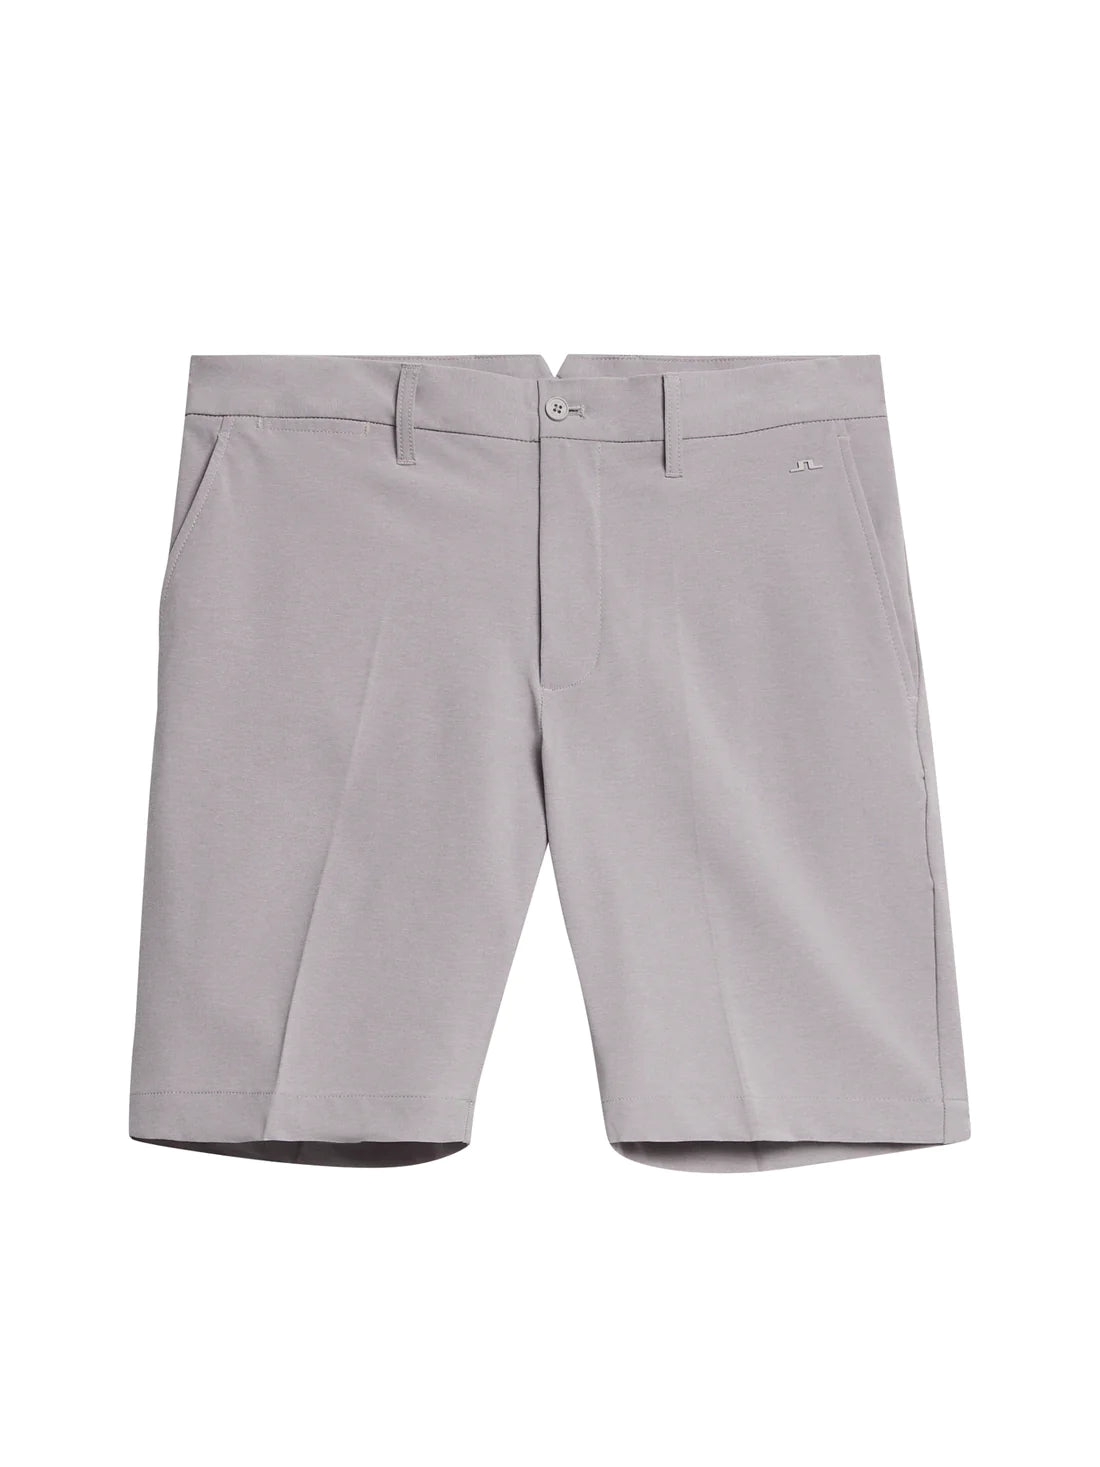 【特價  】J LINDEBERG ELOY灰色混色短褲-GMPA08615-U199